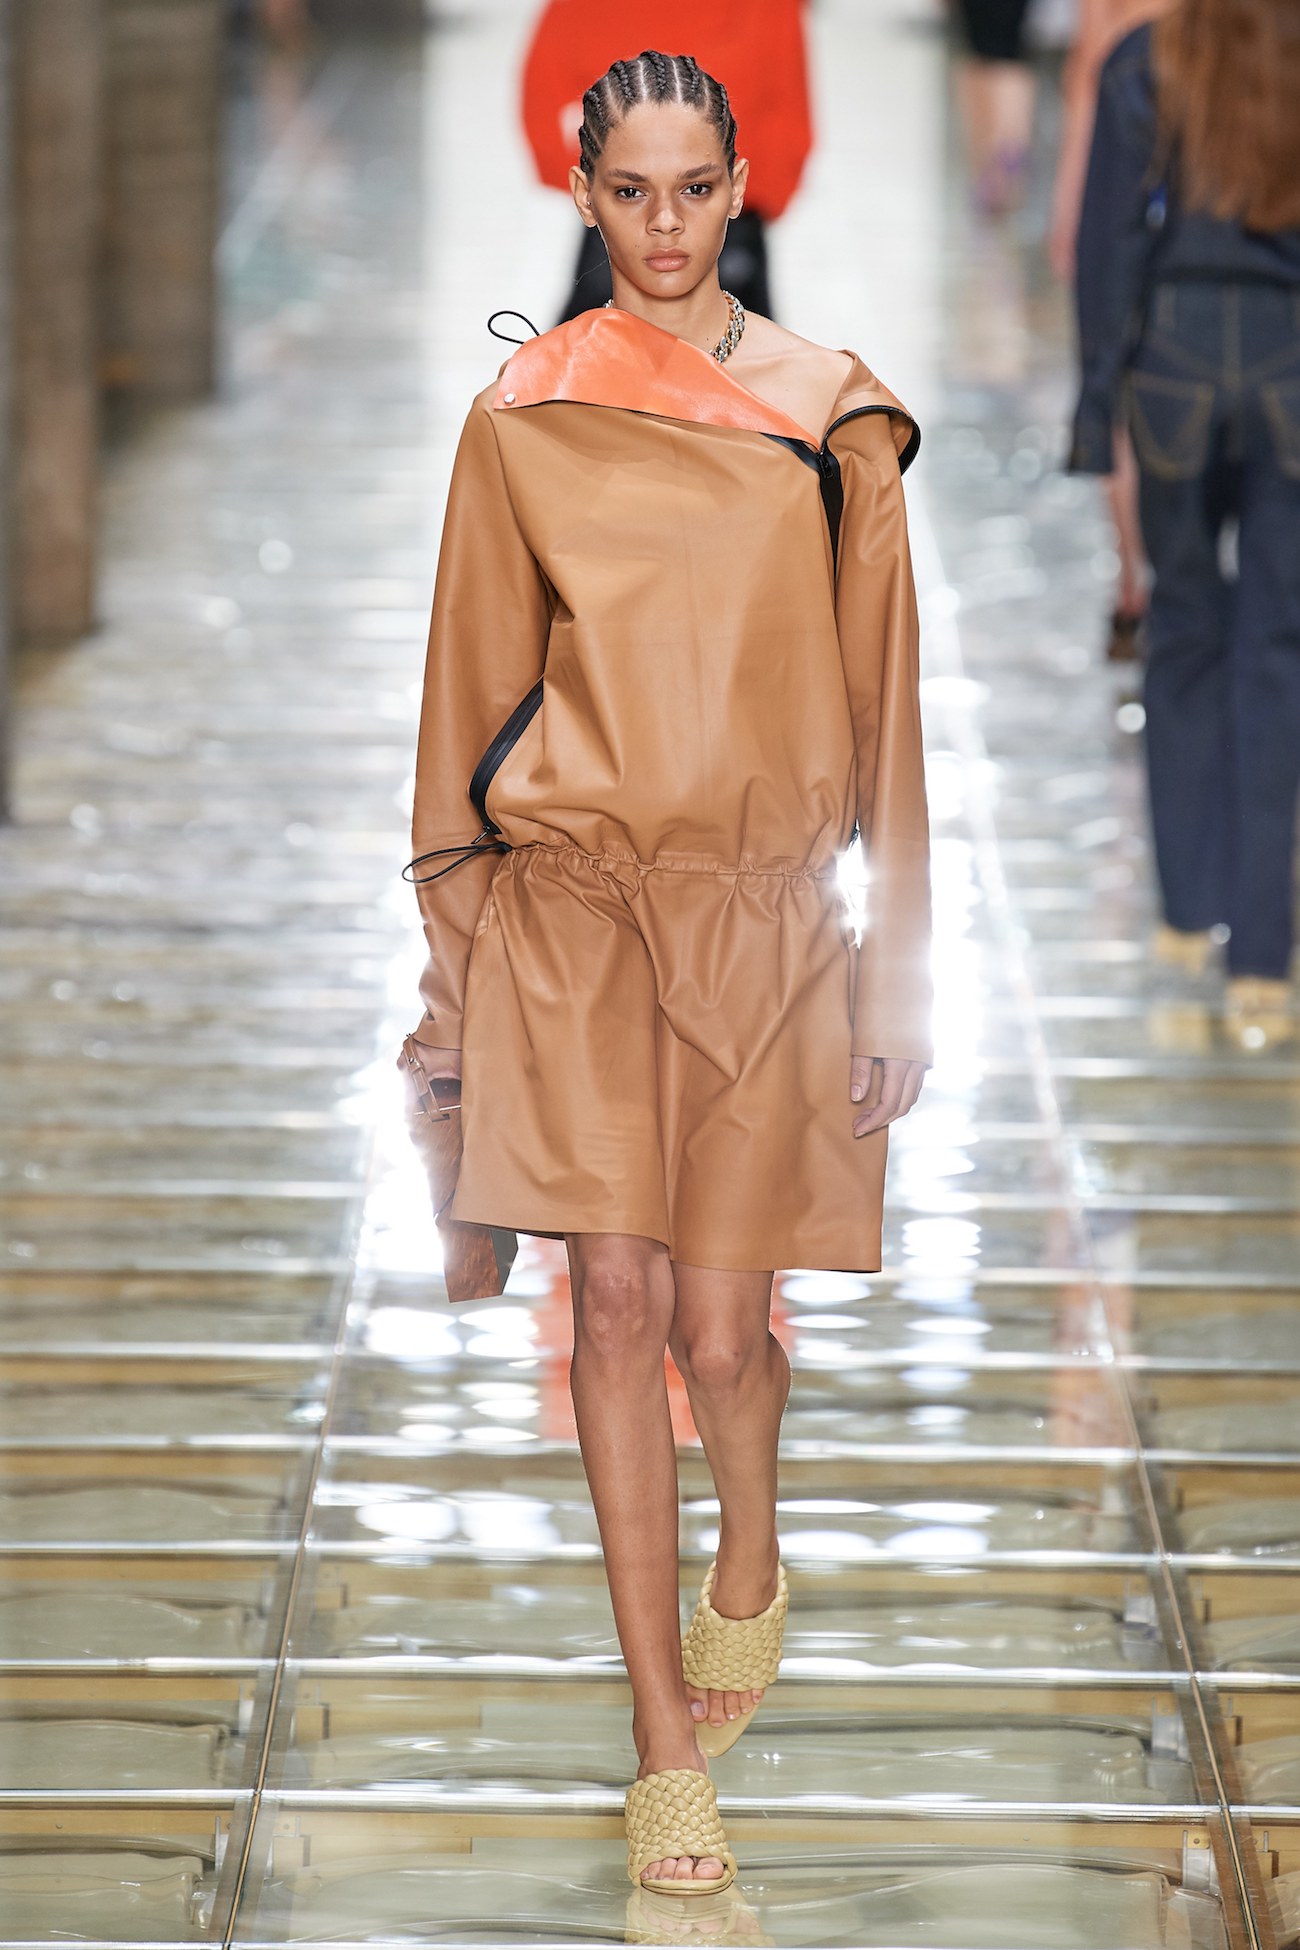 Bottega Veneta SS20 men's collection at Milan Fashion Week —